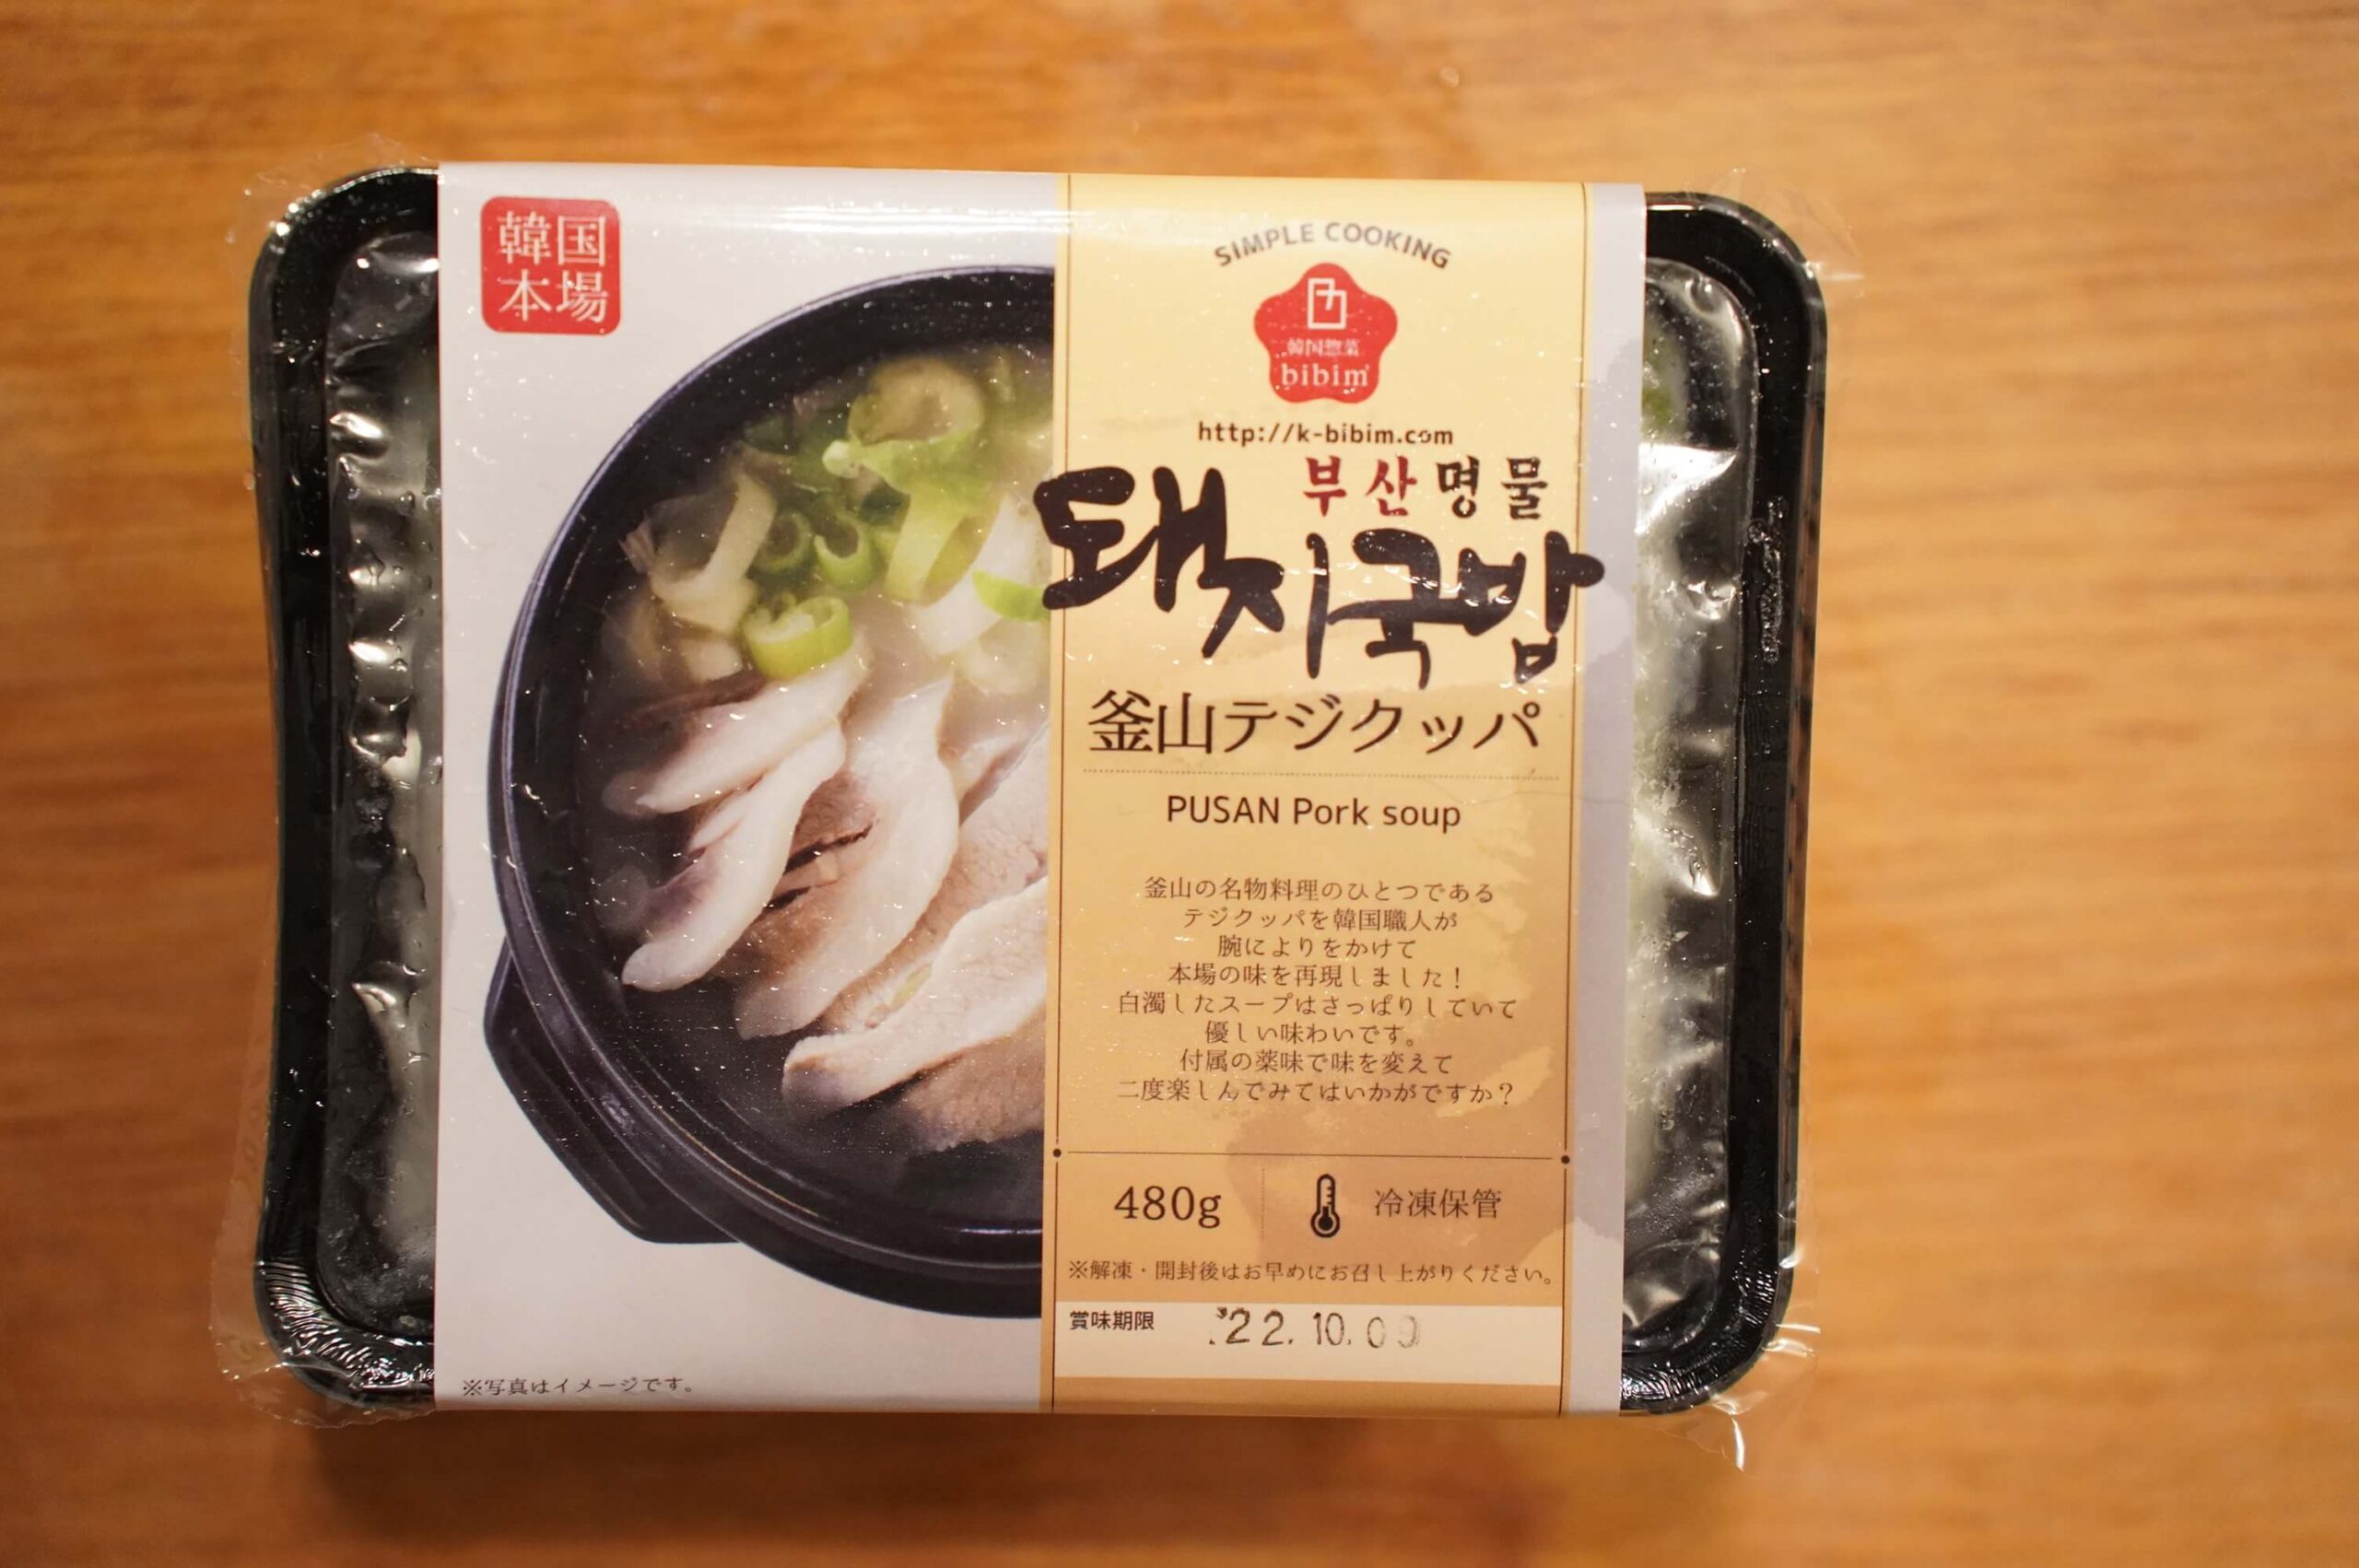 おすすめの美味しい韓国料理の冷凍食品「釜山テジクッパ」のパッケージ写真